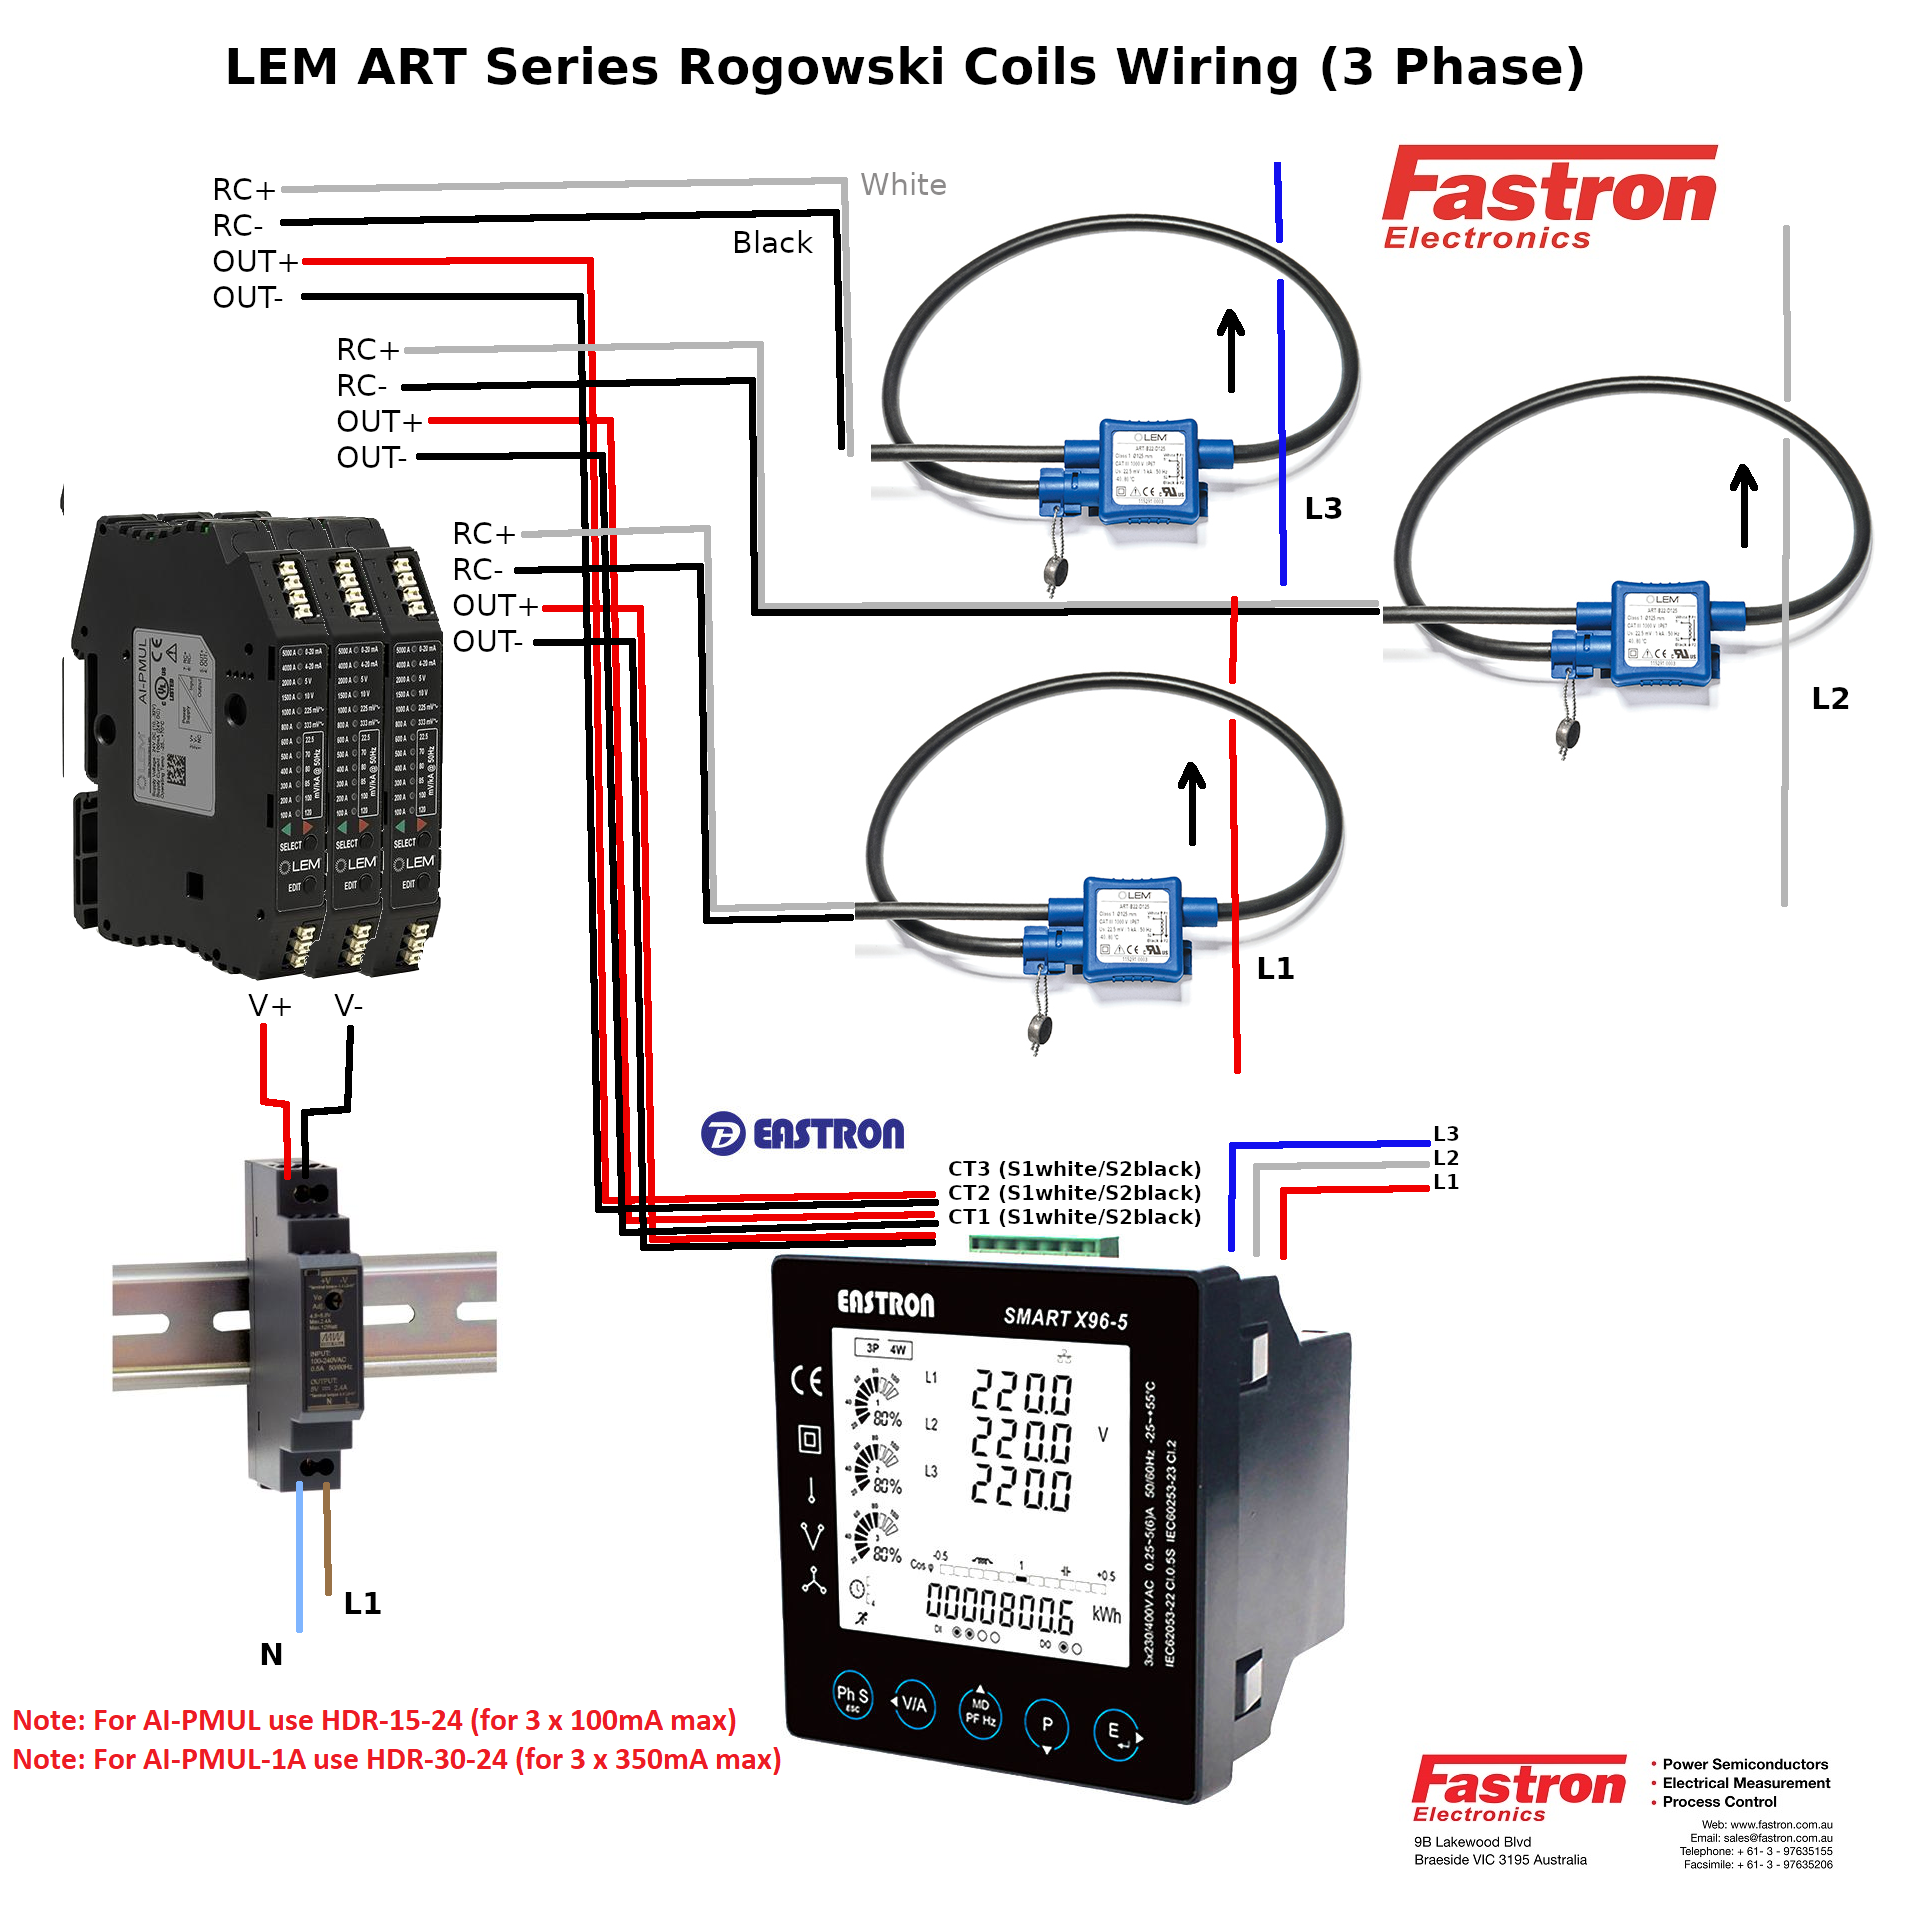 ART-B22-D125-SP3 + AI-P1A - 3 Pcs, 3 Phase Rogowski Coil Set, Class 1, 1 Amp AC, Sensitivity, and Measurement Range, 12.5cm Diameter, 3M integrator Cable